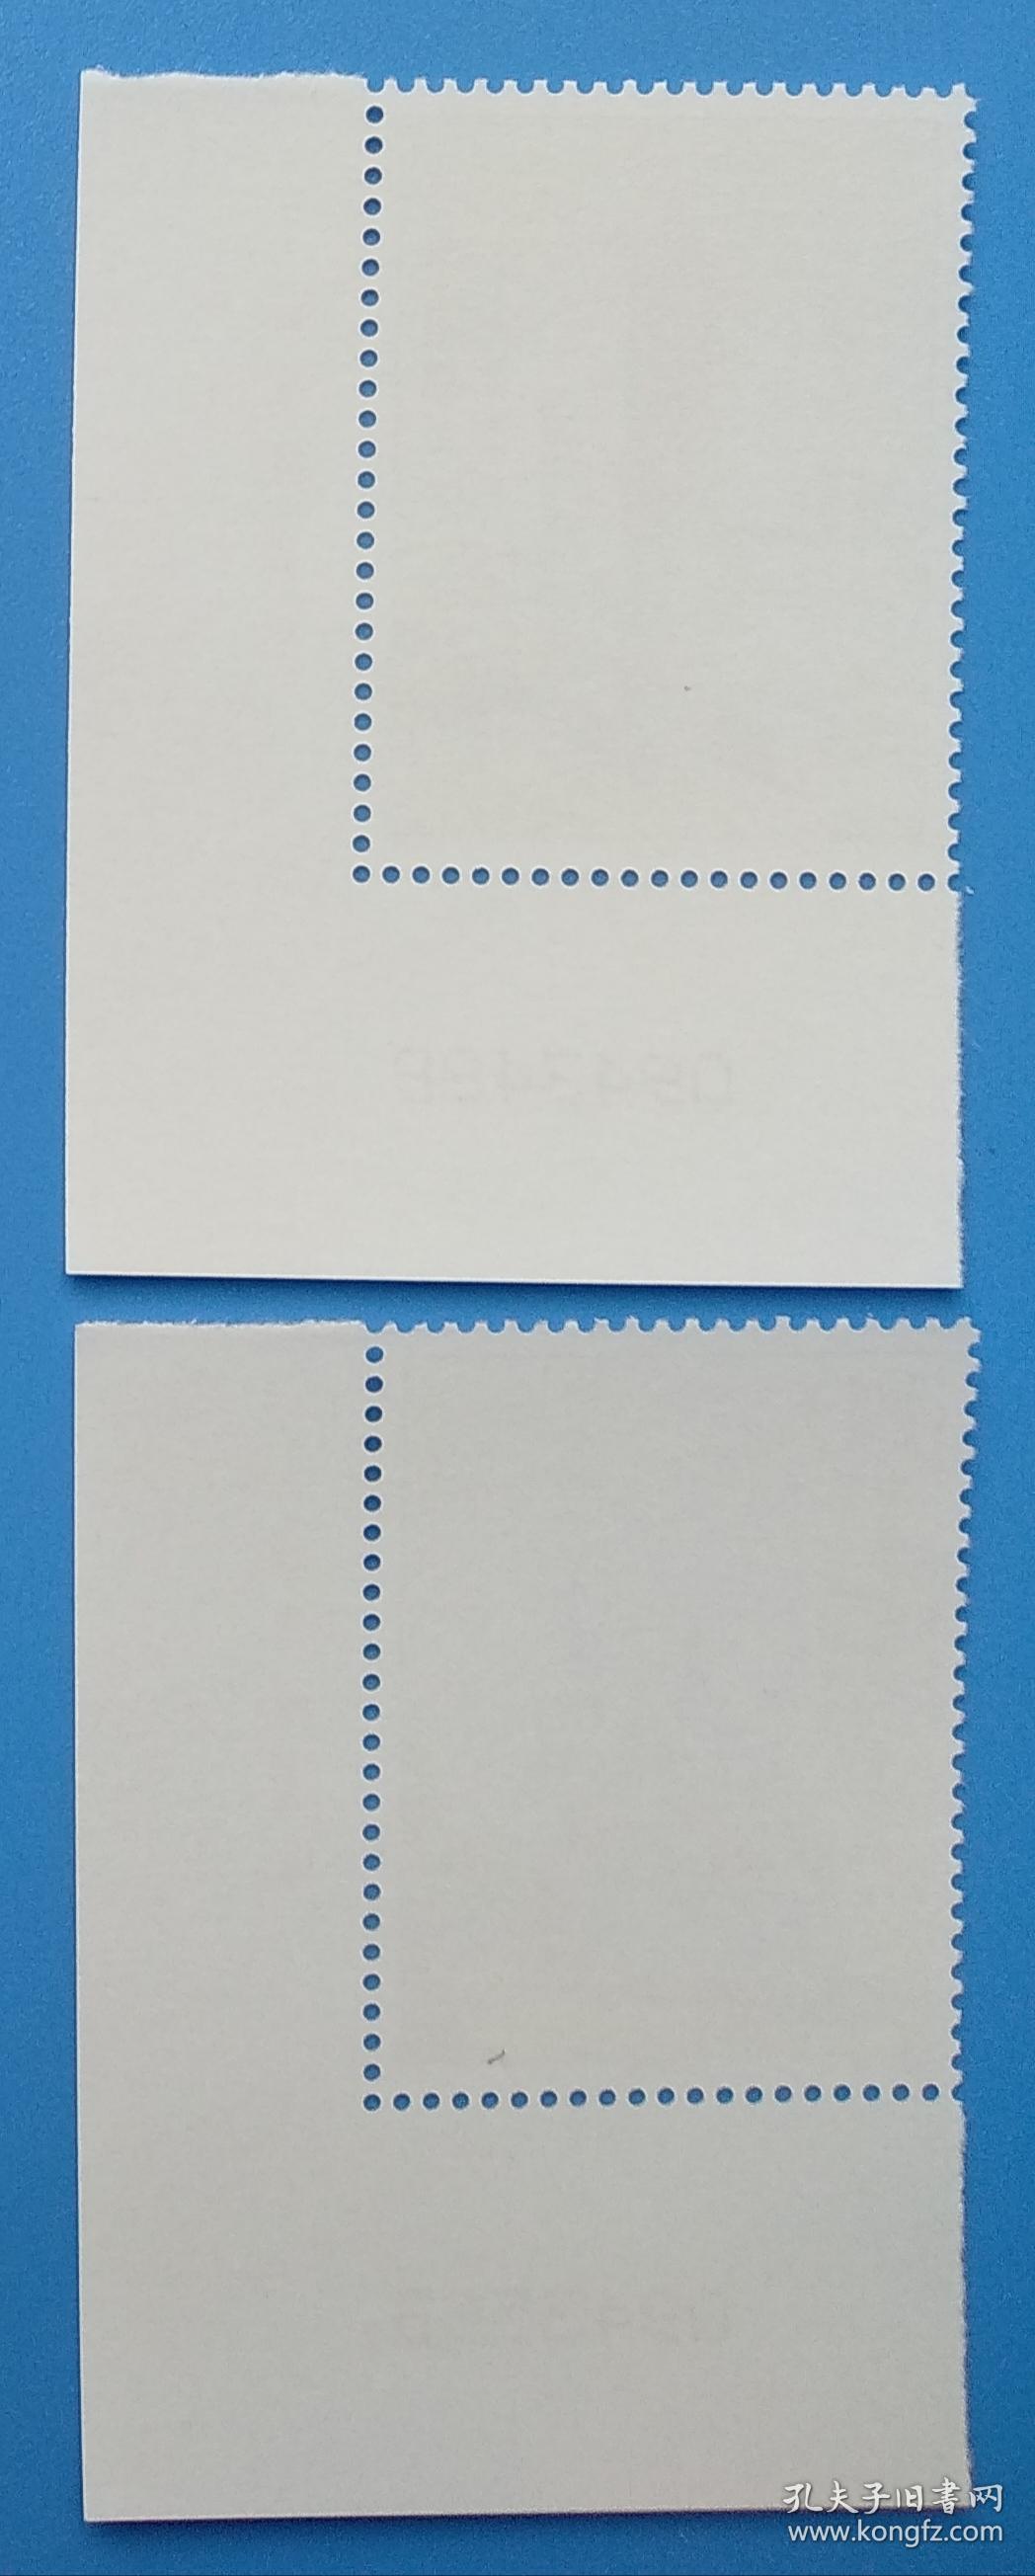 2004-25 城市建筑 邮票（中国和西班牙联合发行）特种邮票带厂铭版号直角边